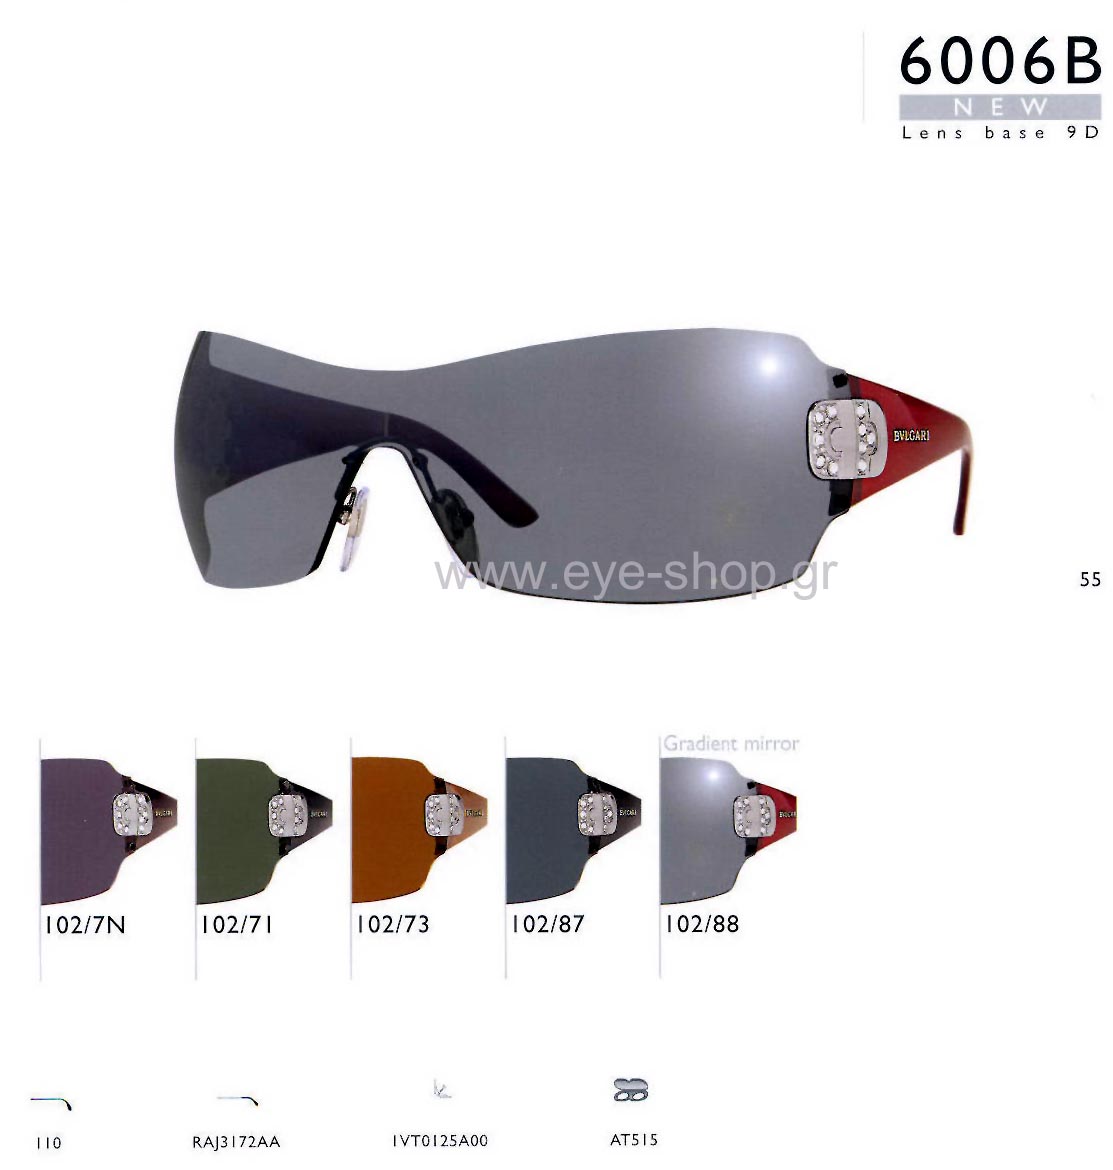 Sunglasses Bulgari 6006B 102/88